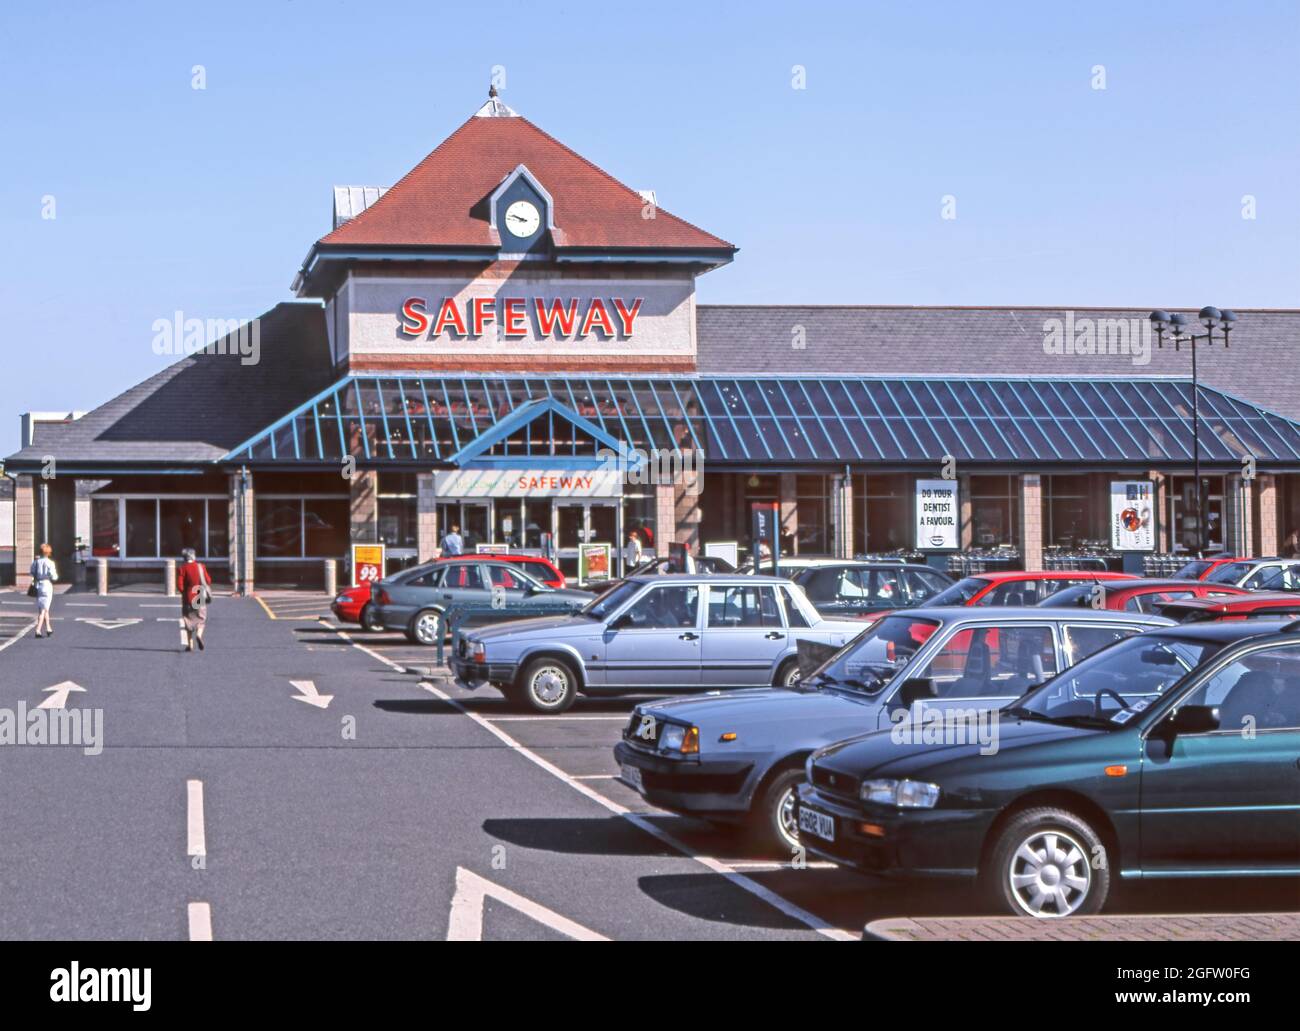 Safeway Supermarkt Einzelhandel Lebensmittelgeschäft historisches Archivbild der Uhr aus den 1900er Jahren und Markenlogo auf der Außenseite des Gebäudes mit Käufer und kostenloser Parkplatz, der im Jahr 1999 gesehen wurde, bevor er erworben und zur Essenskette von Morrisons hinzugefügt wurde Getränkehändler im Jahr 2004 eine Ansicht der 90er Jahre, wie wir in Stranraer Dumfries und Galloway in Schottland, Großbritannien, waren Stockfoto